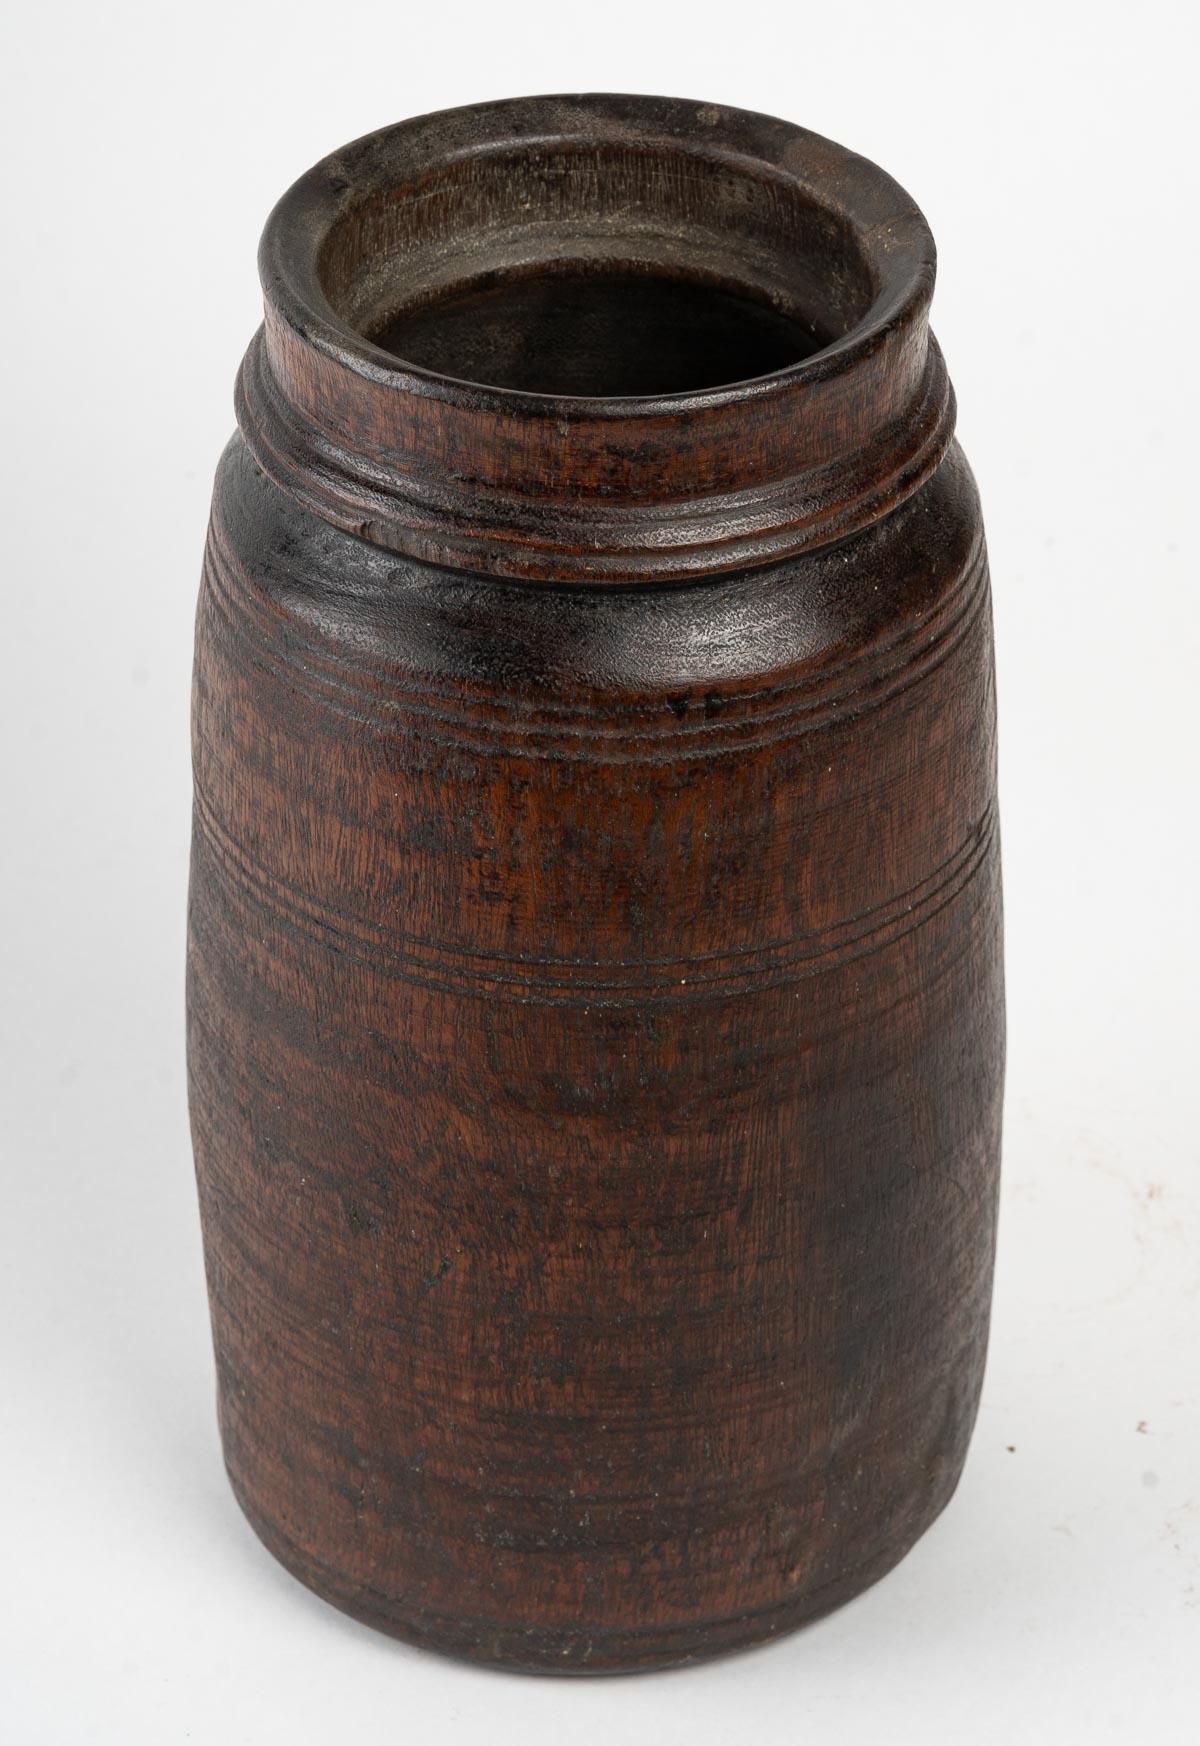 Vase d'art africain, bois, 20e siècle.
Mesures : H : 29 cm, P : 17 cm.